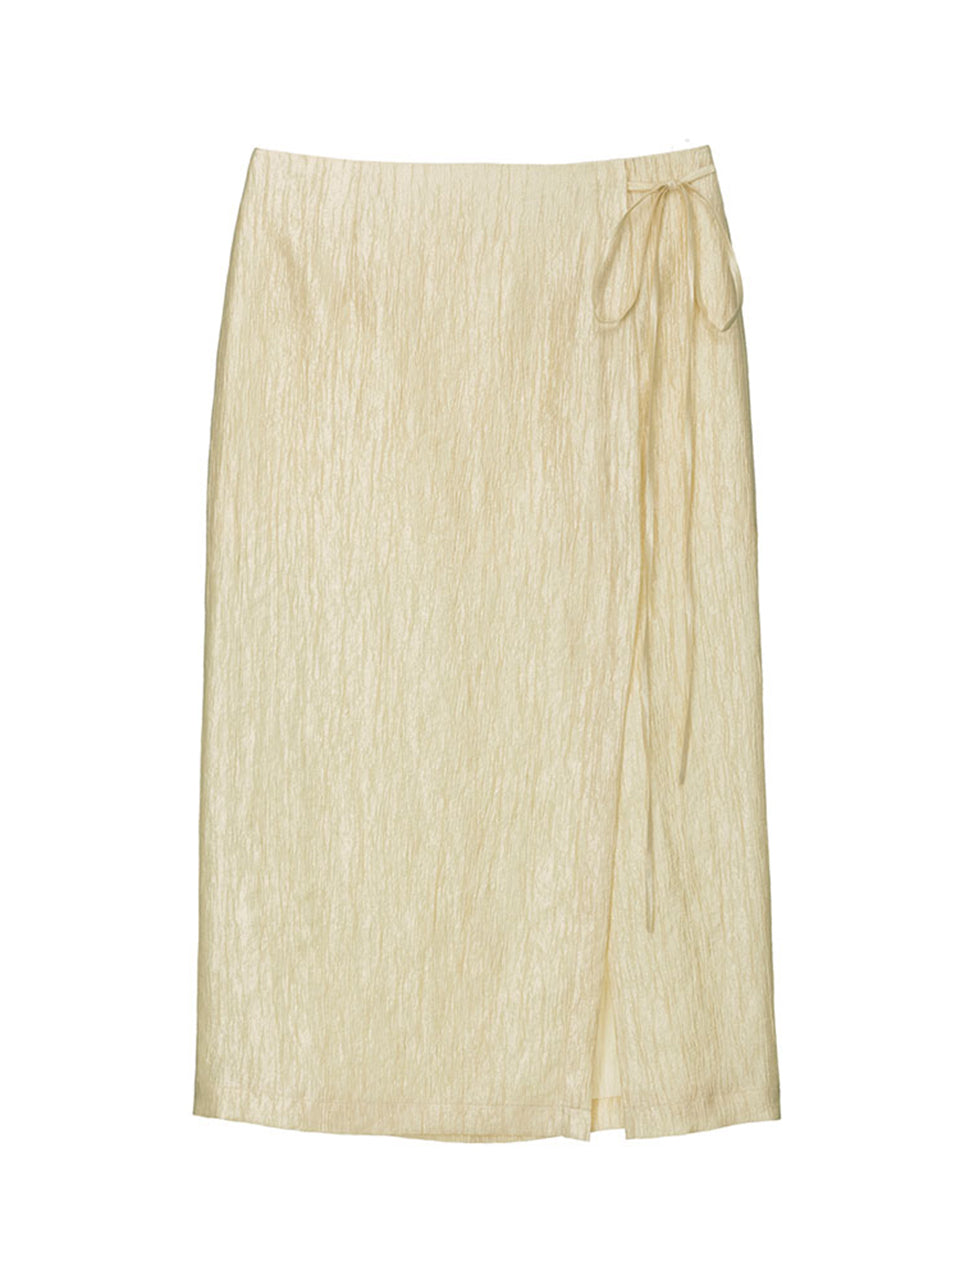 Linkle Silky Skirt in Butter